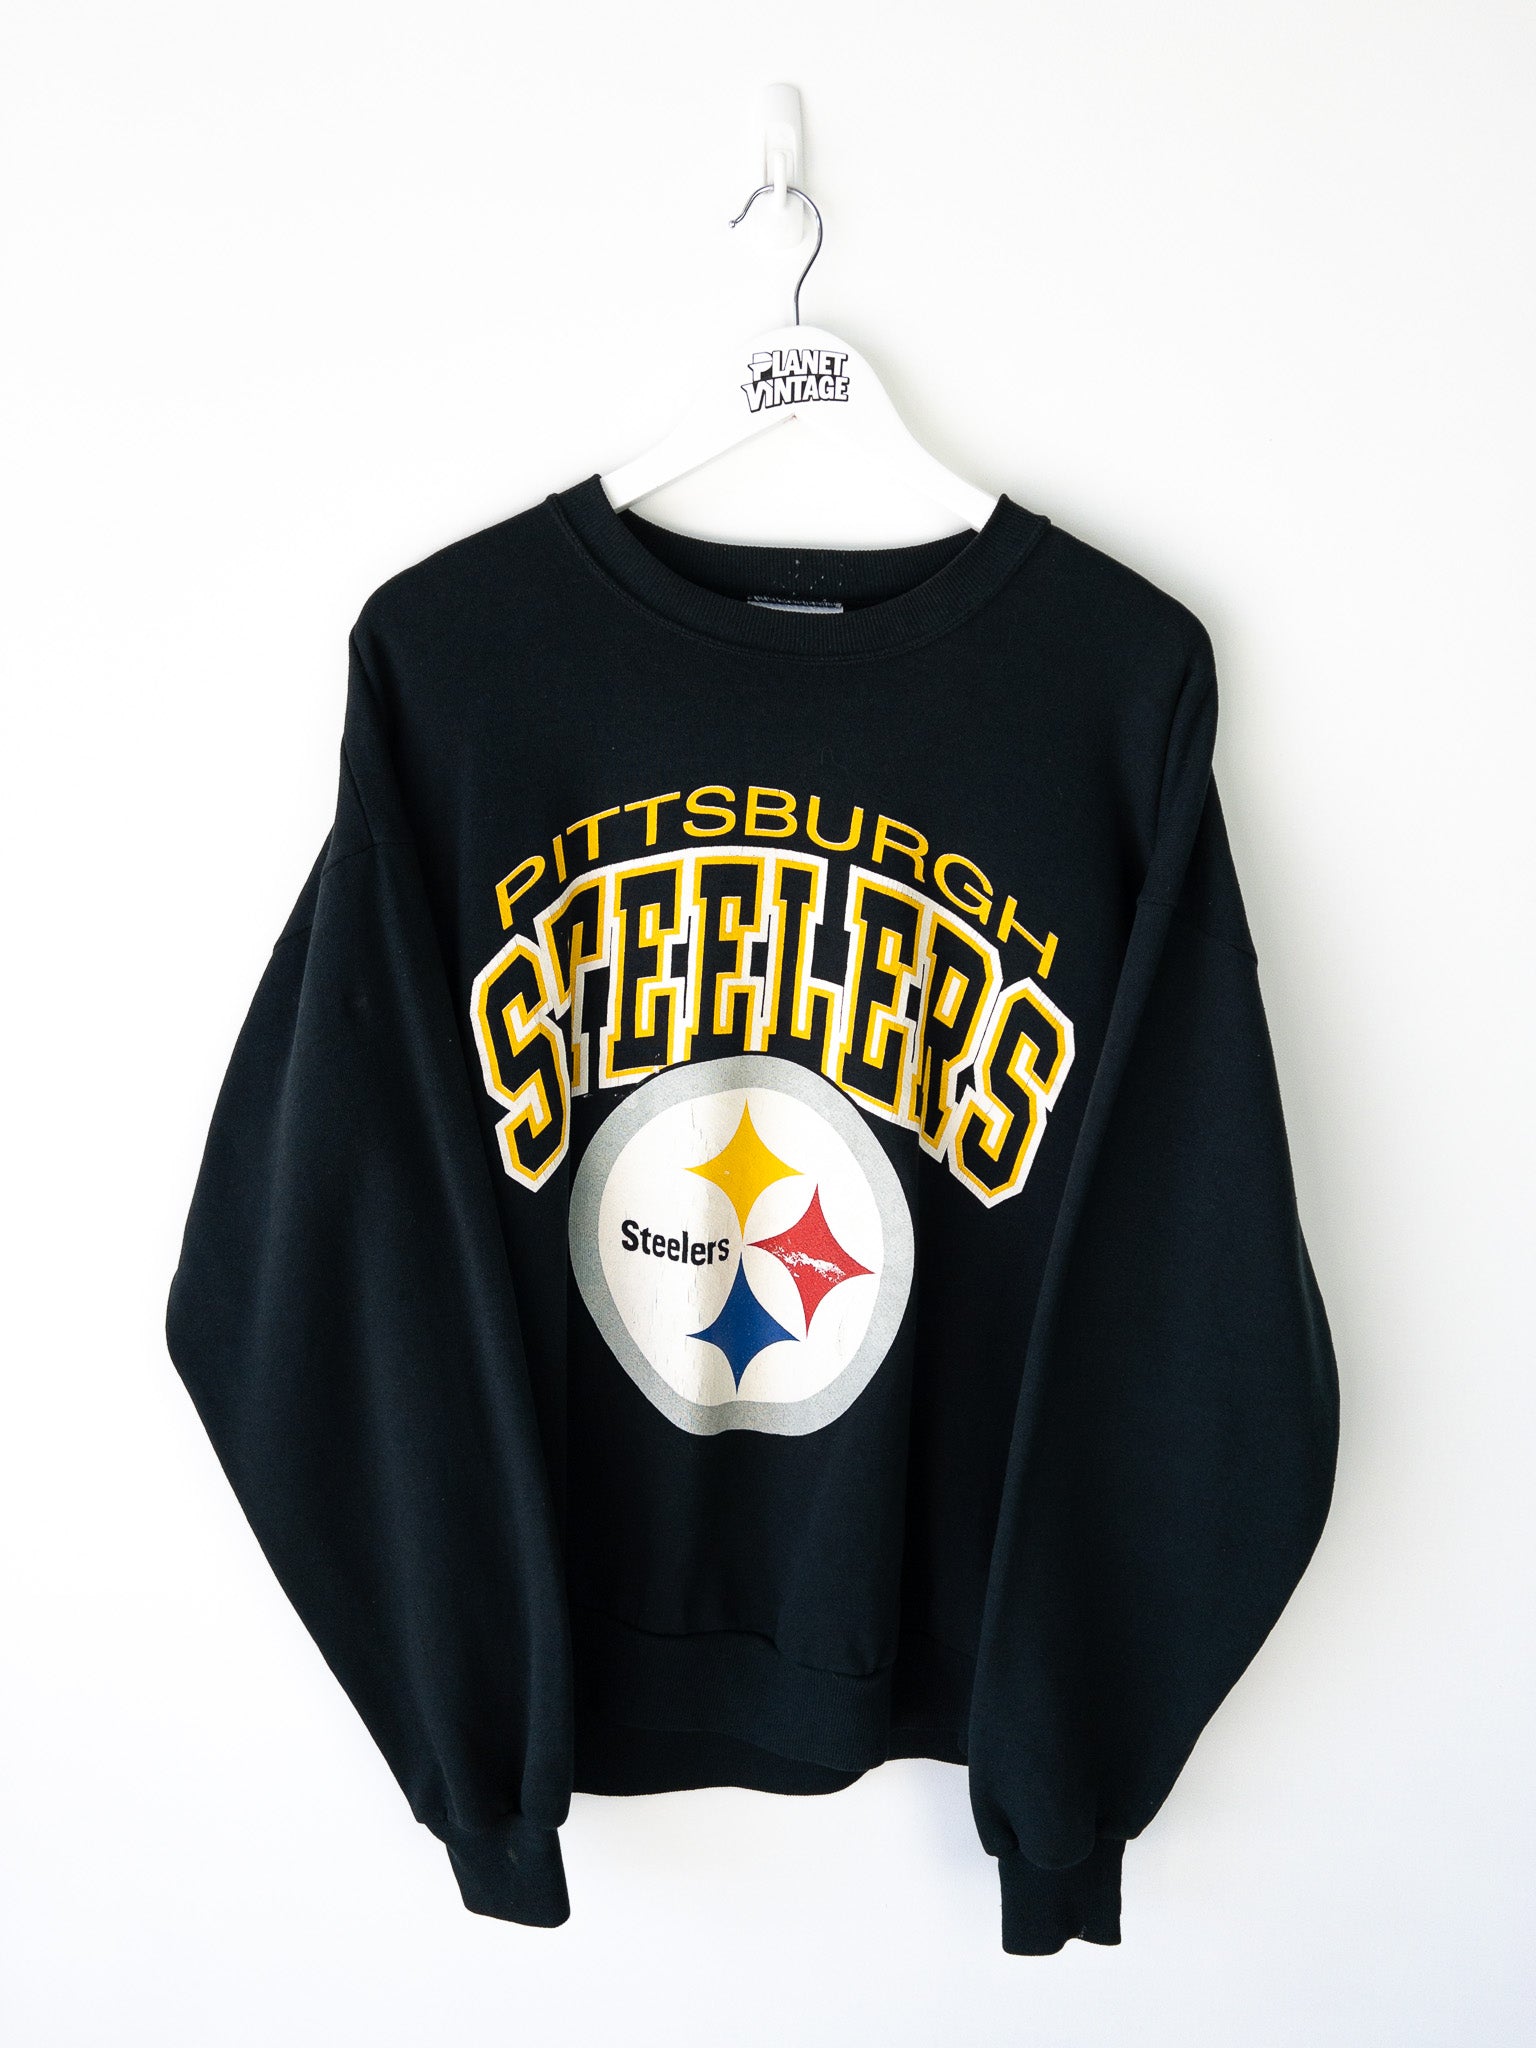 Vintage Pittsburgh Steelers Sweatshirt (XL)